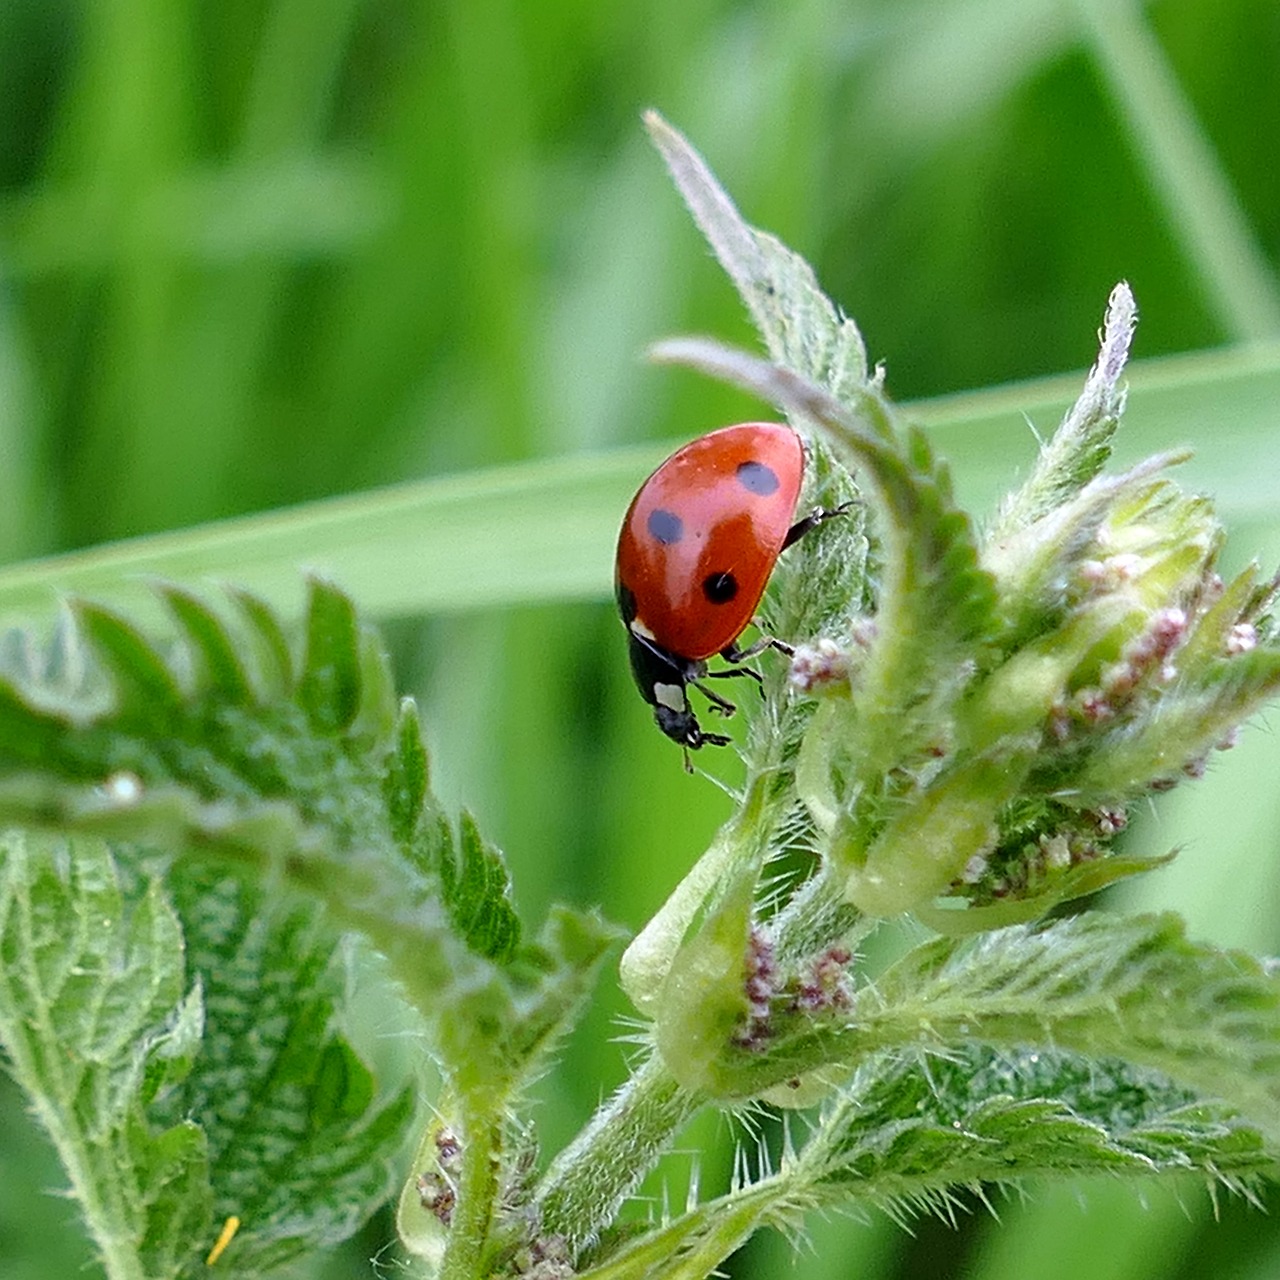 beetle ladybug stinging nettle free photo